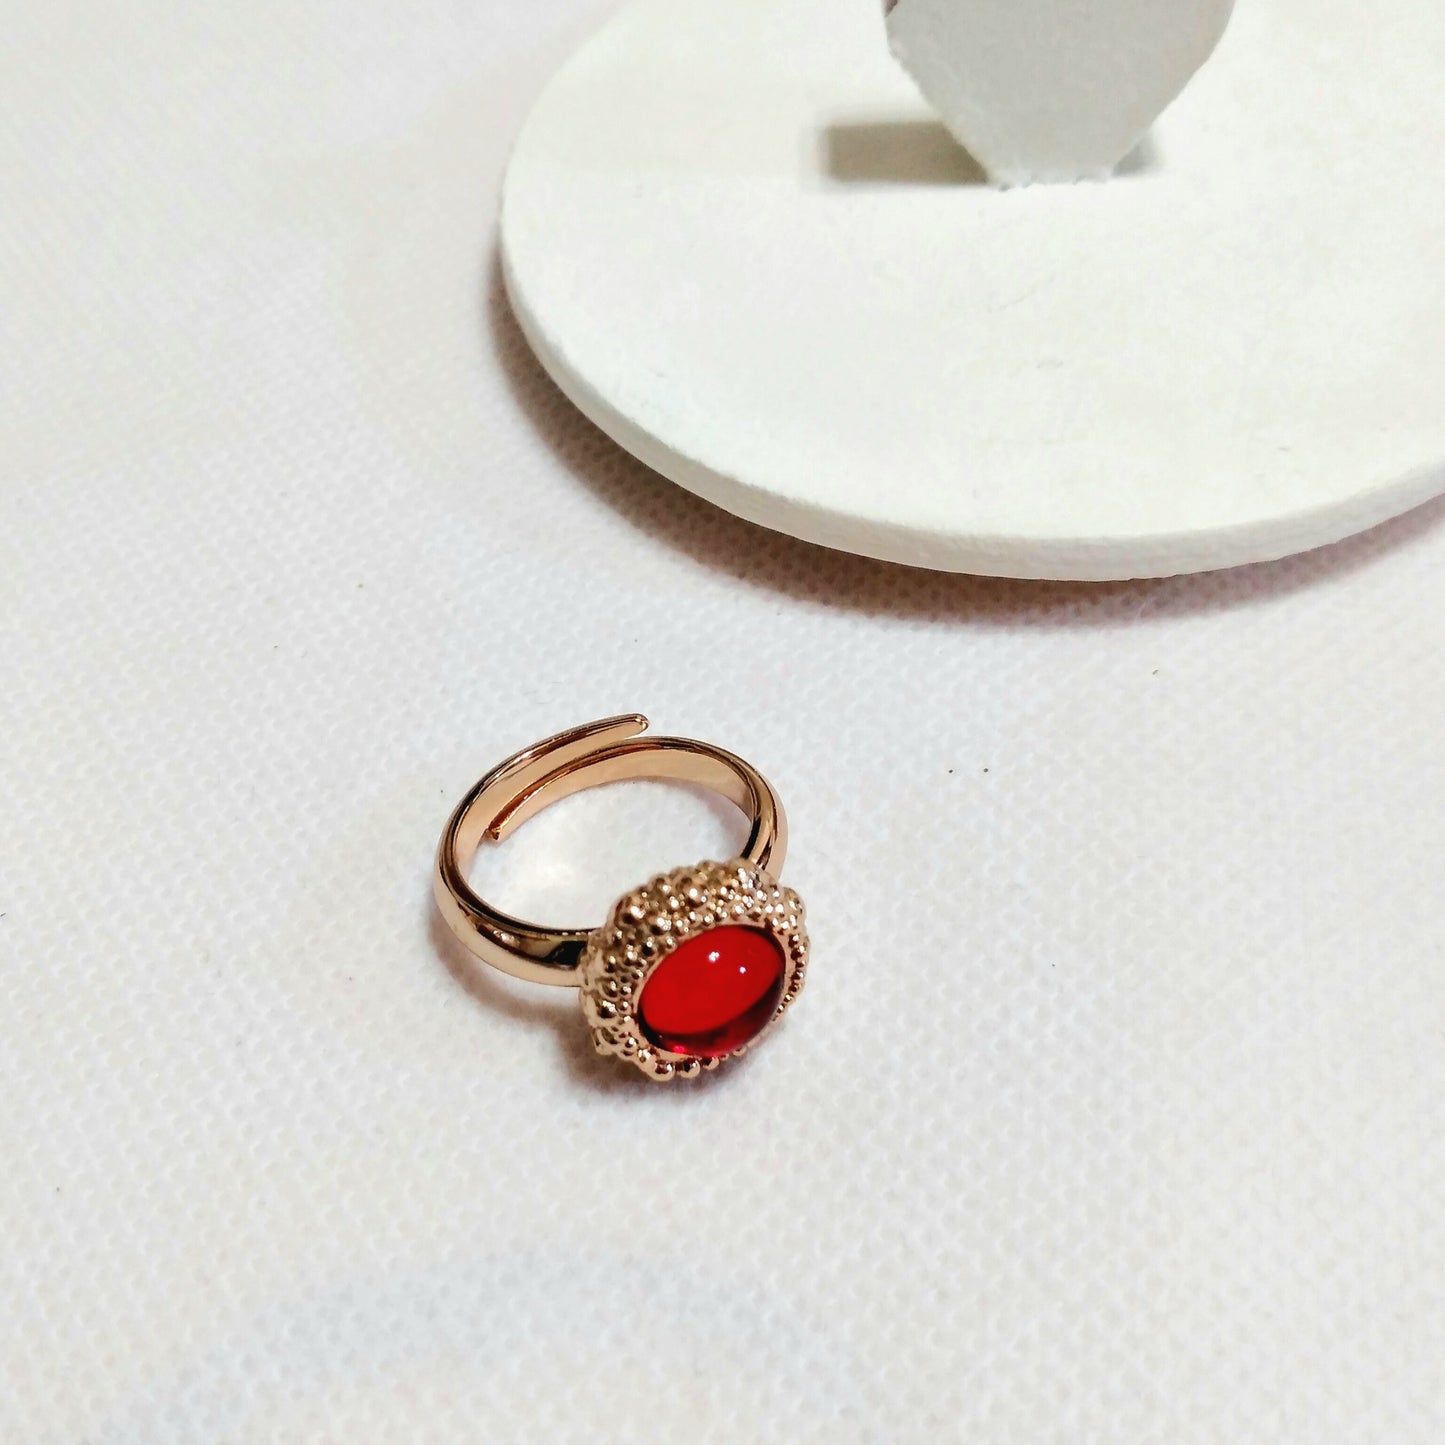 Σετ Κολιέ & Δαχτυλίδι Ροζ/Χρυσό με Κόκκινη Πέτρα